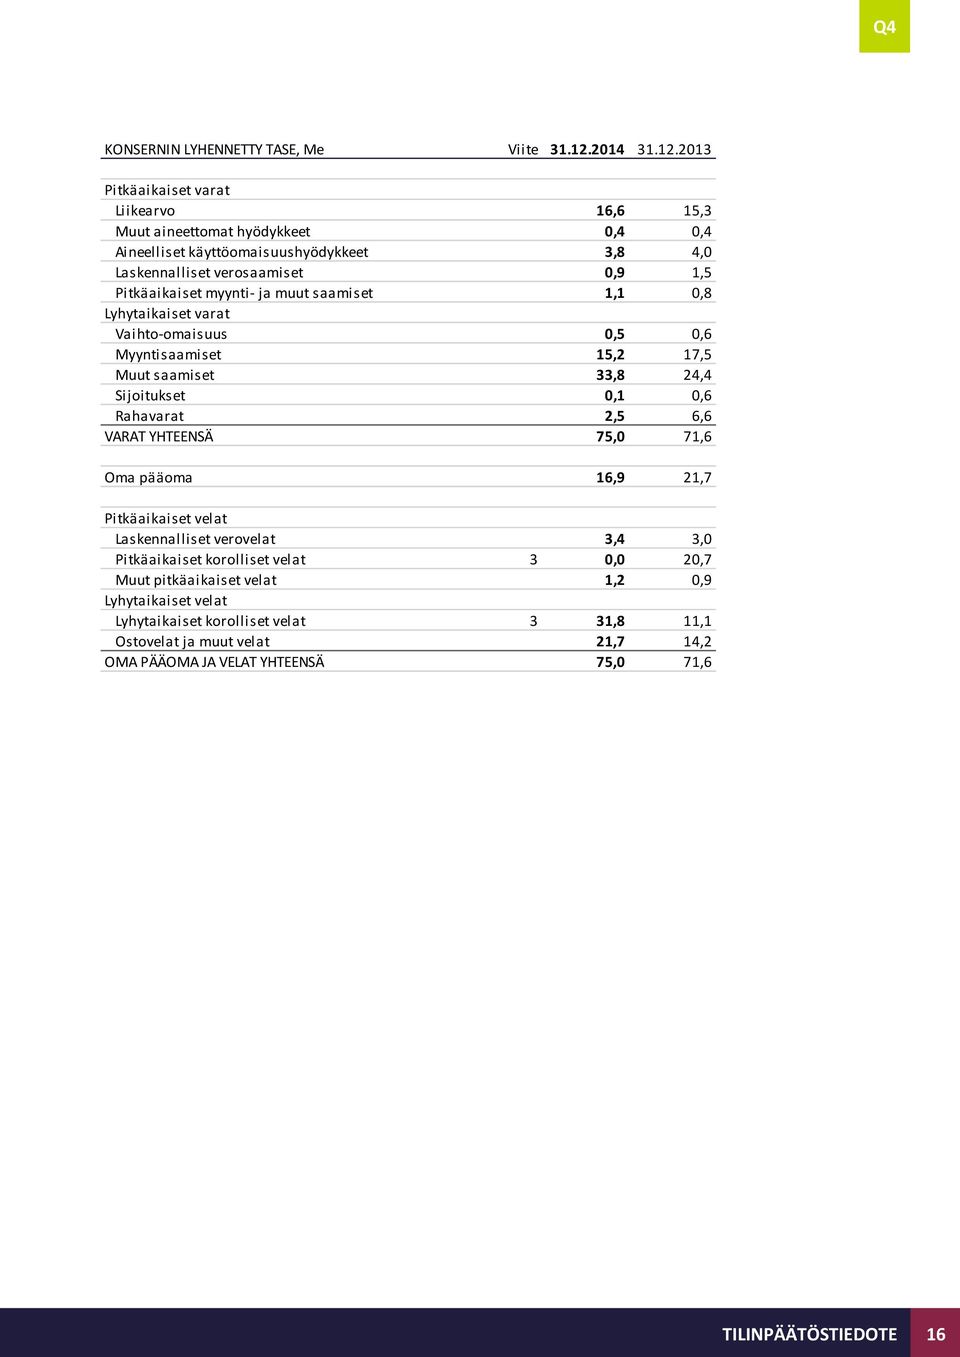 2013 Pitkäaikaiset varat Liikearvo 16,6 15,3 Muut aineettomat hyödykkeet 0,4 0,4 Aineelliset käyttöomaisuushyödykkeet 3,8 4,0 Laskennalliset verosaamiset 0,9 1,5 Pitkäaikaiset